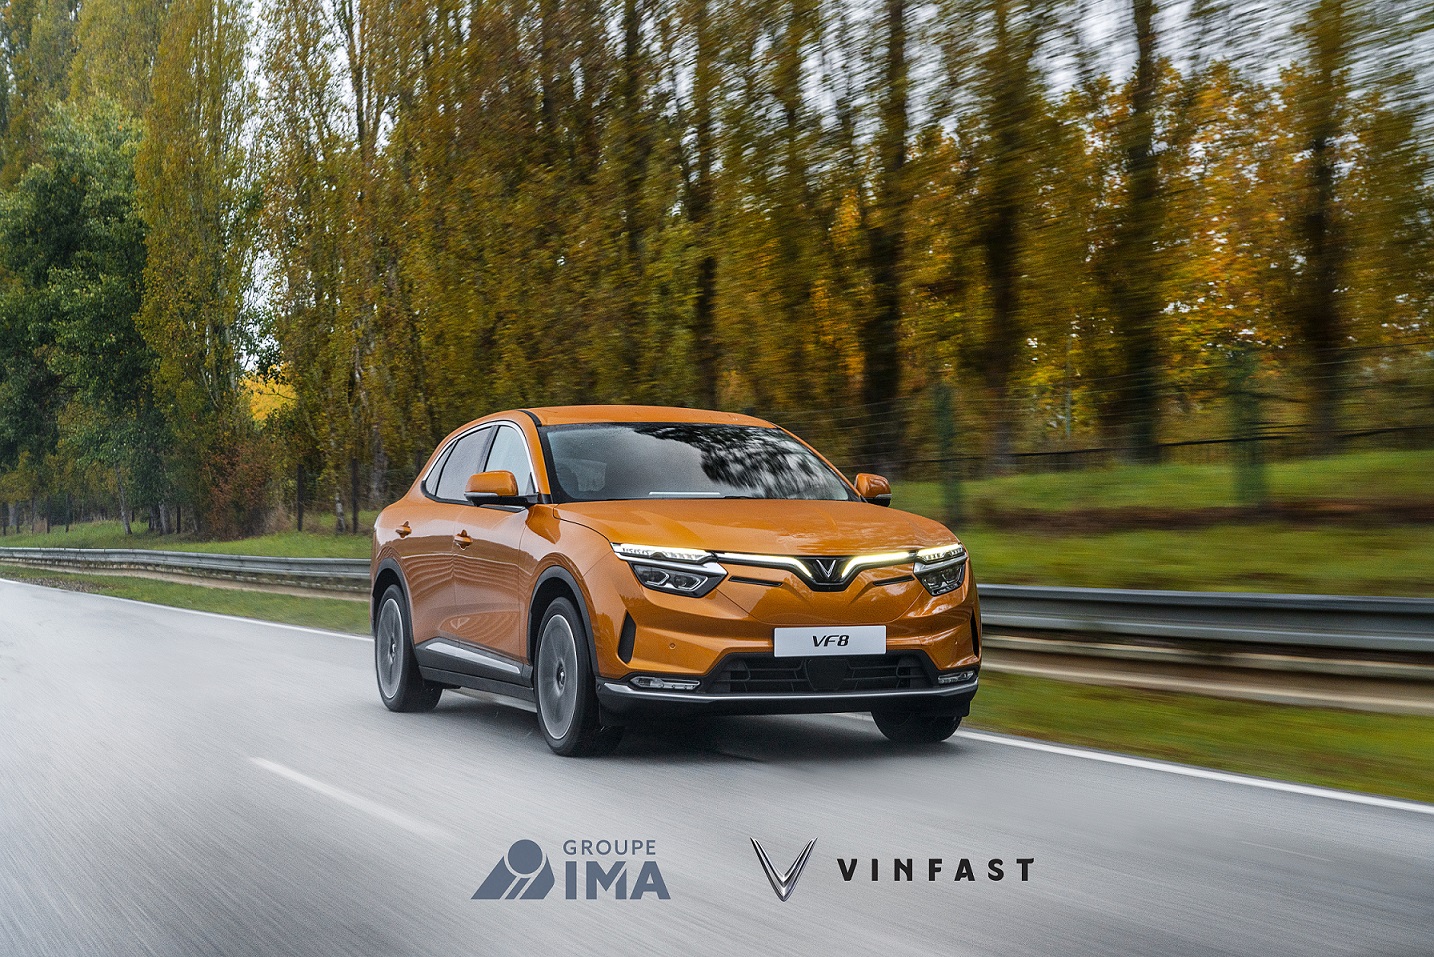 Kinh tế - VinFast lựa chọn IMA làm đối tác cung cấp “dịch vụ hỗ trợ trên đường” cho khách hàng tại châu Âu